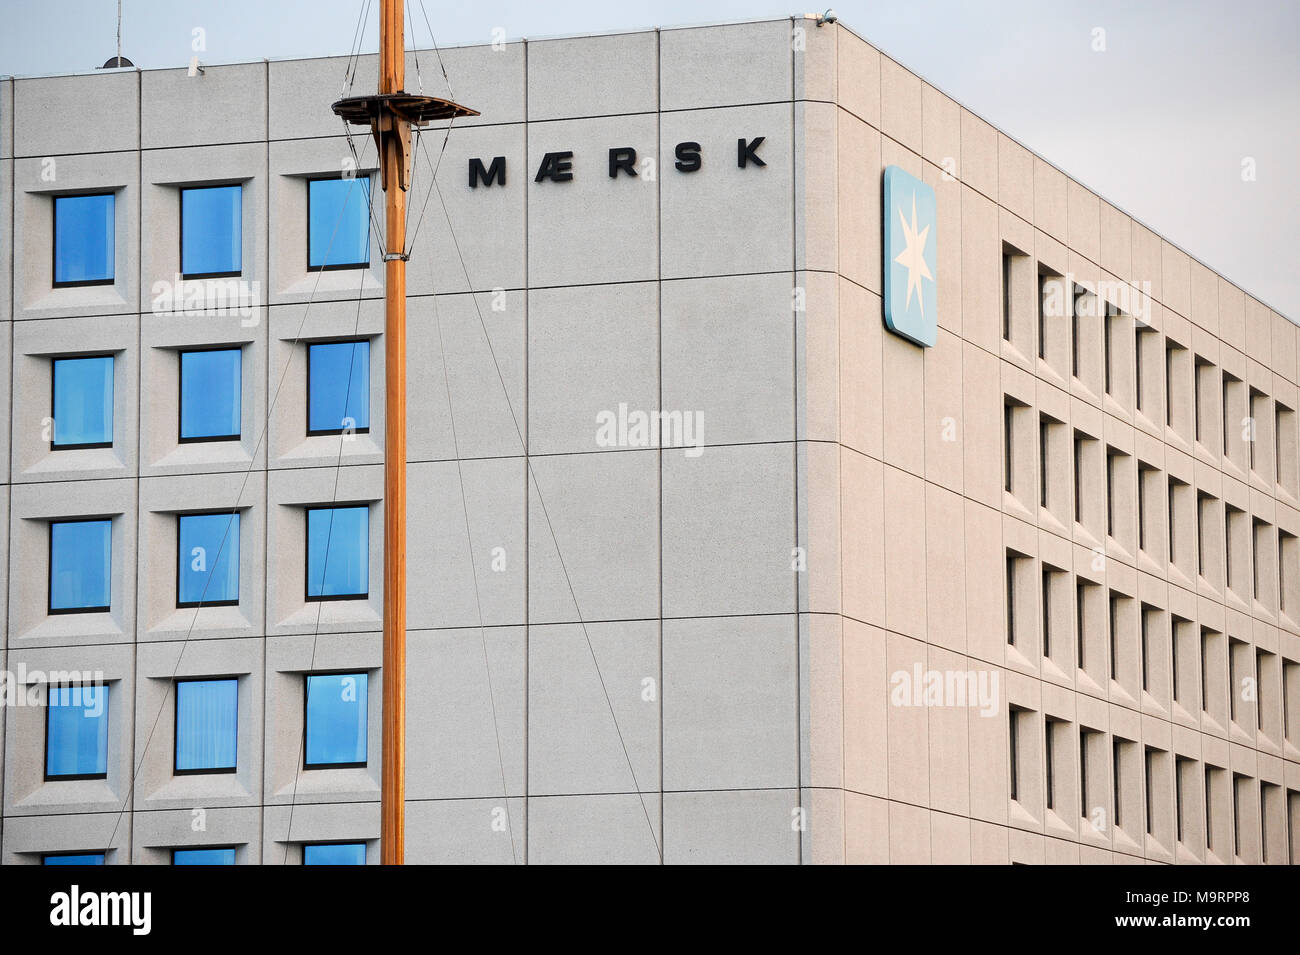 Sedes de A.P. Moller Maersk Group, conglomerado empresarial danesa en el transporte, la logística y el sector energético, uno de los mayores buques portacontenedores ope Foto de stock